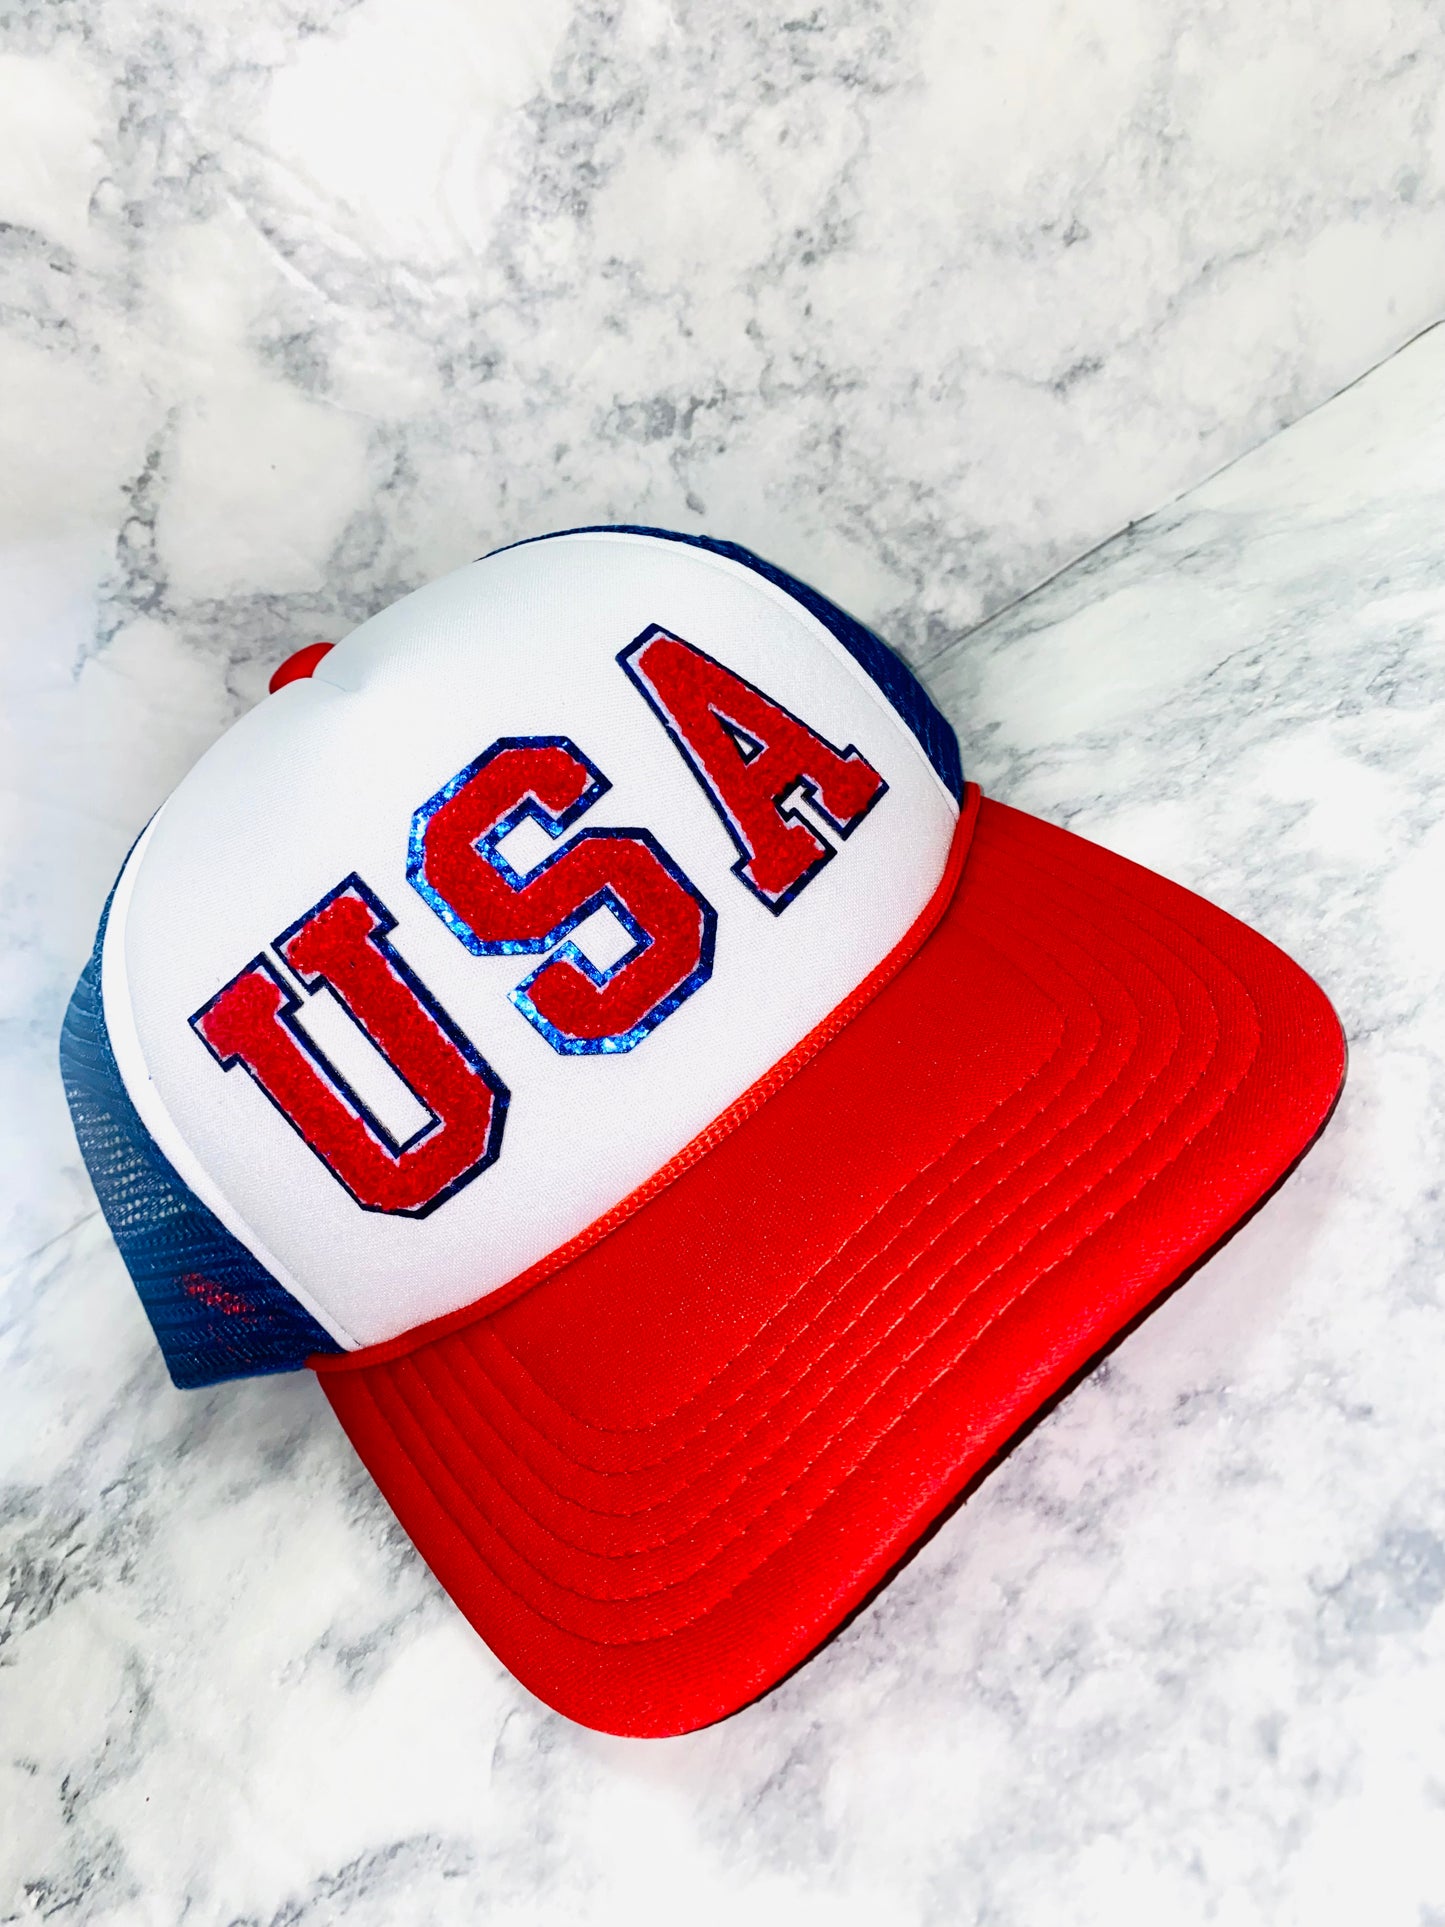 USA Chenille Trucker Hat